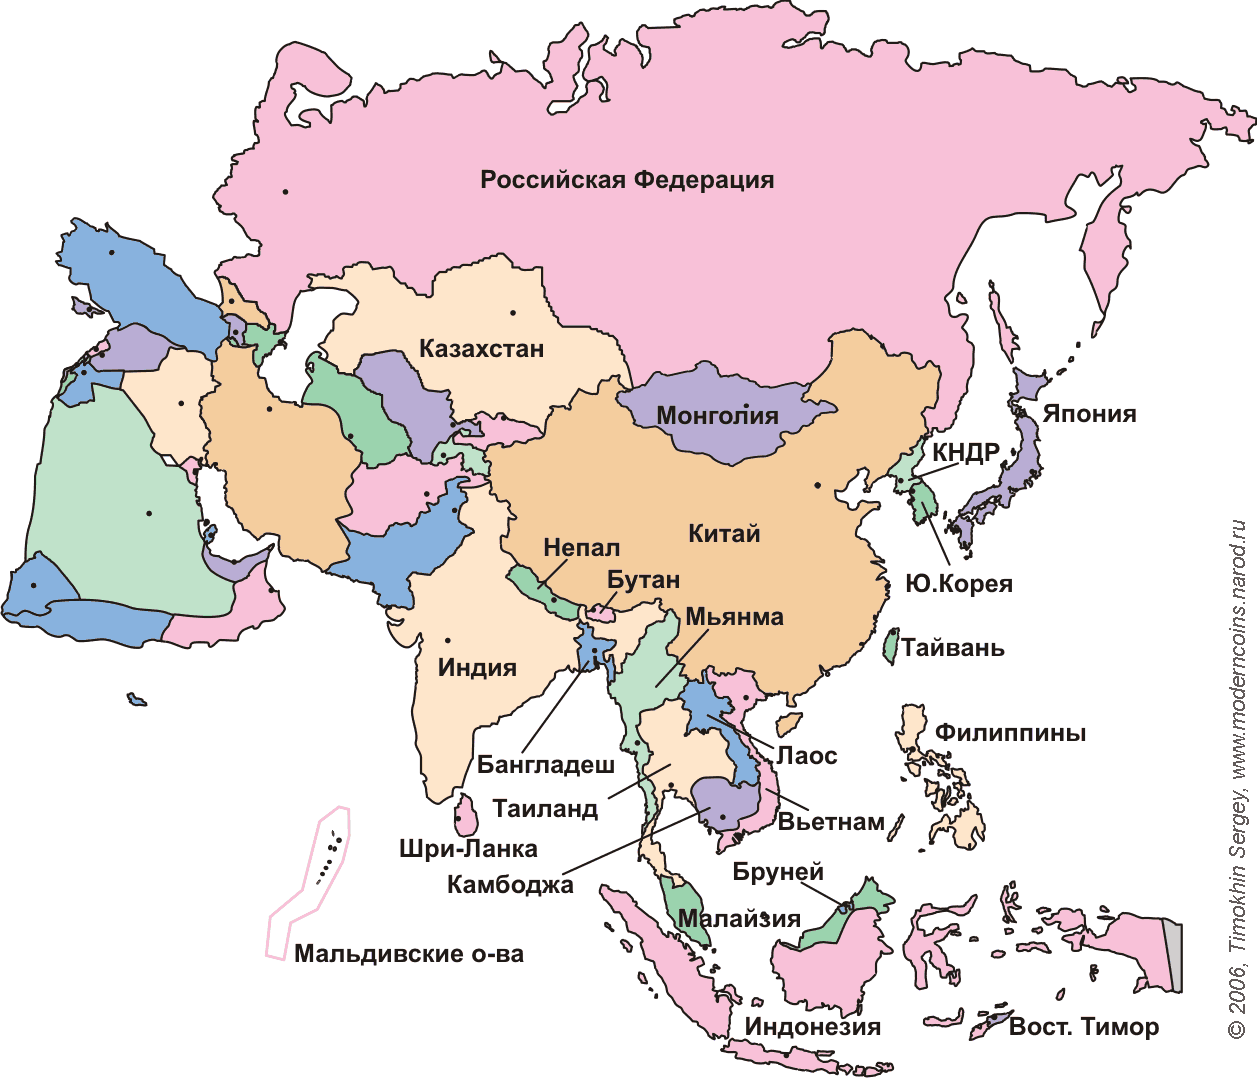 Самые крупные страны евразии по площади. Политическая карта Азии со странами крупно. Карта зарубежной Азии со странами и столицами. Политическая карта Азии со странами и столицами. Государства зарубежной Азии на карте.